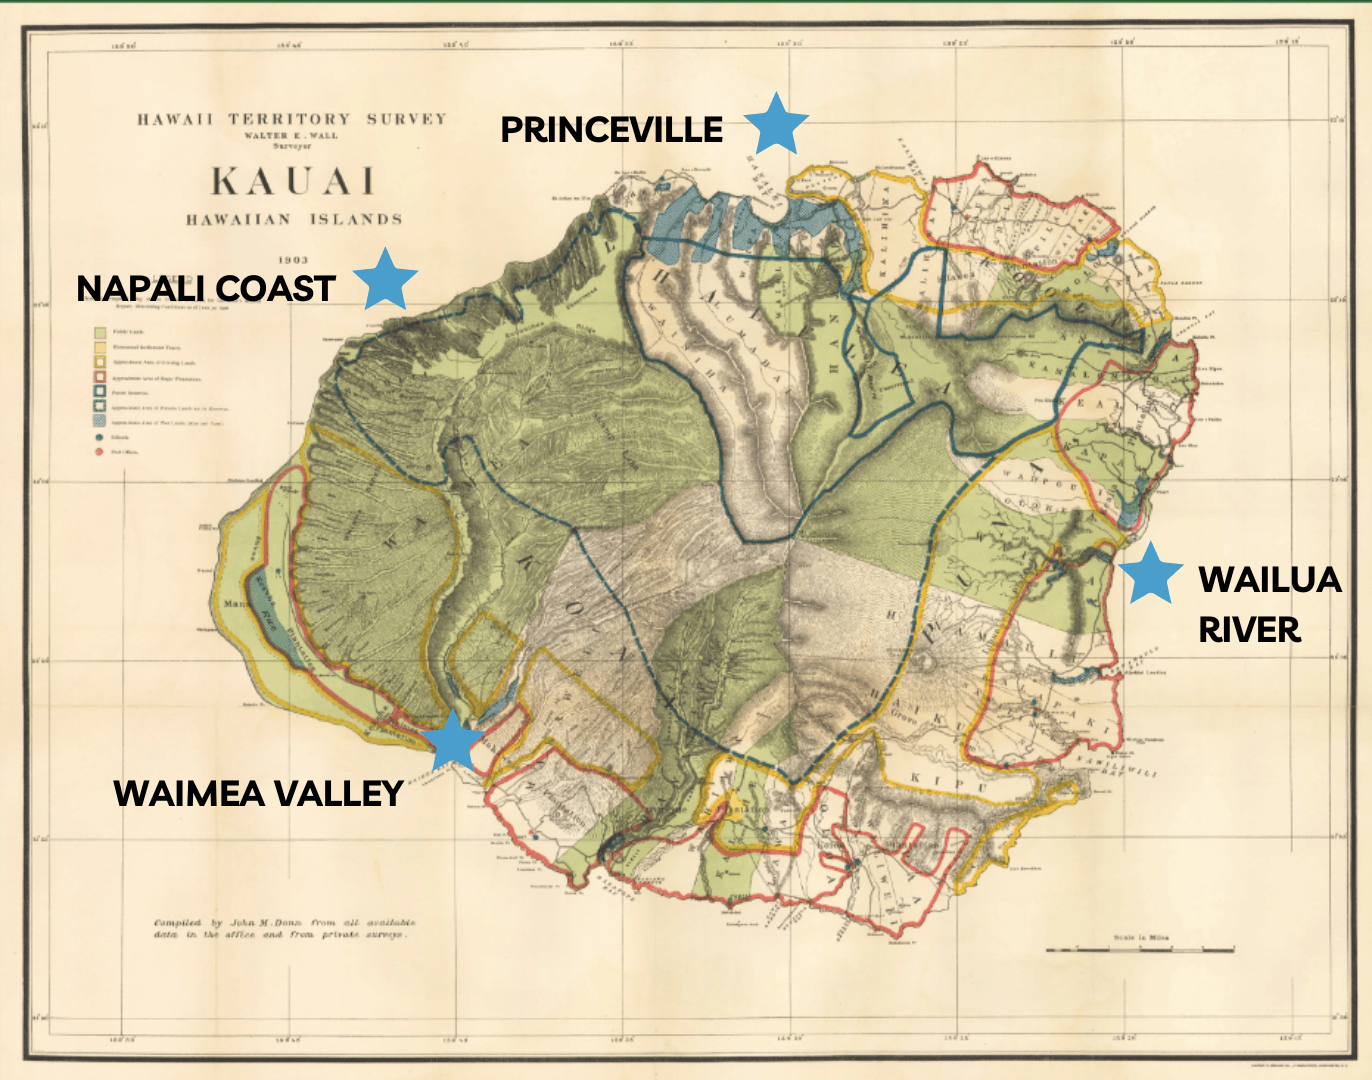 Kauai Adventure Map